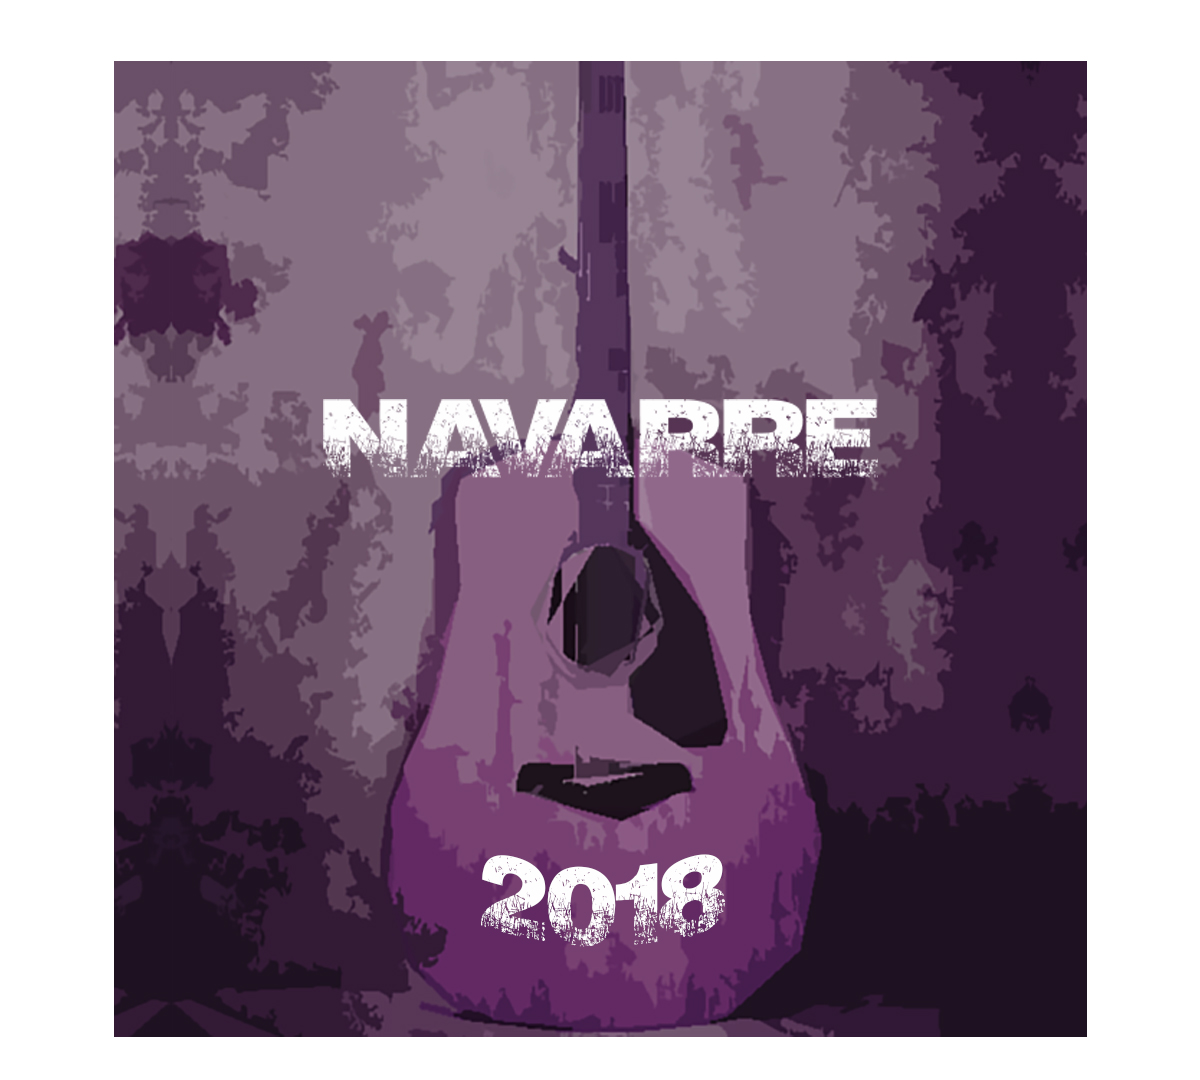 CHAPA NAVARRE 2018